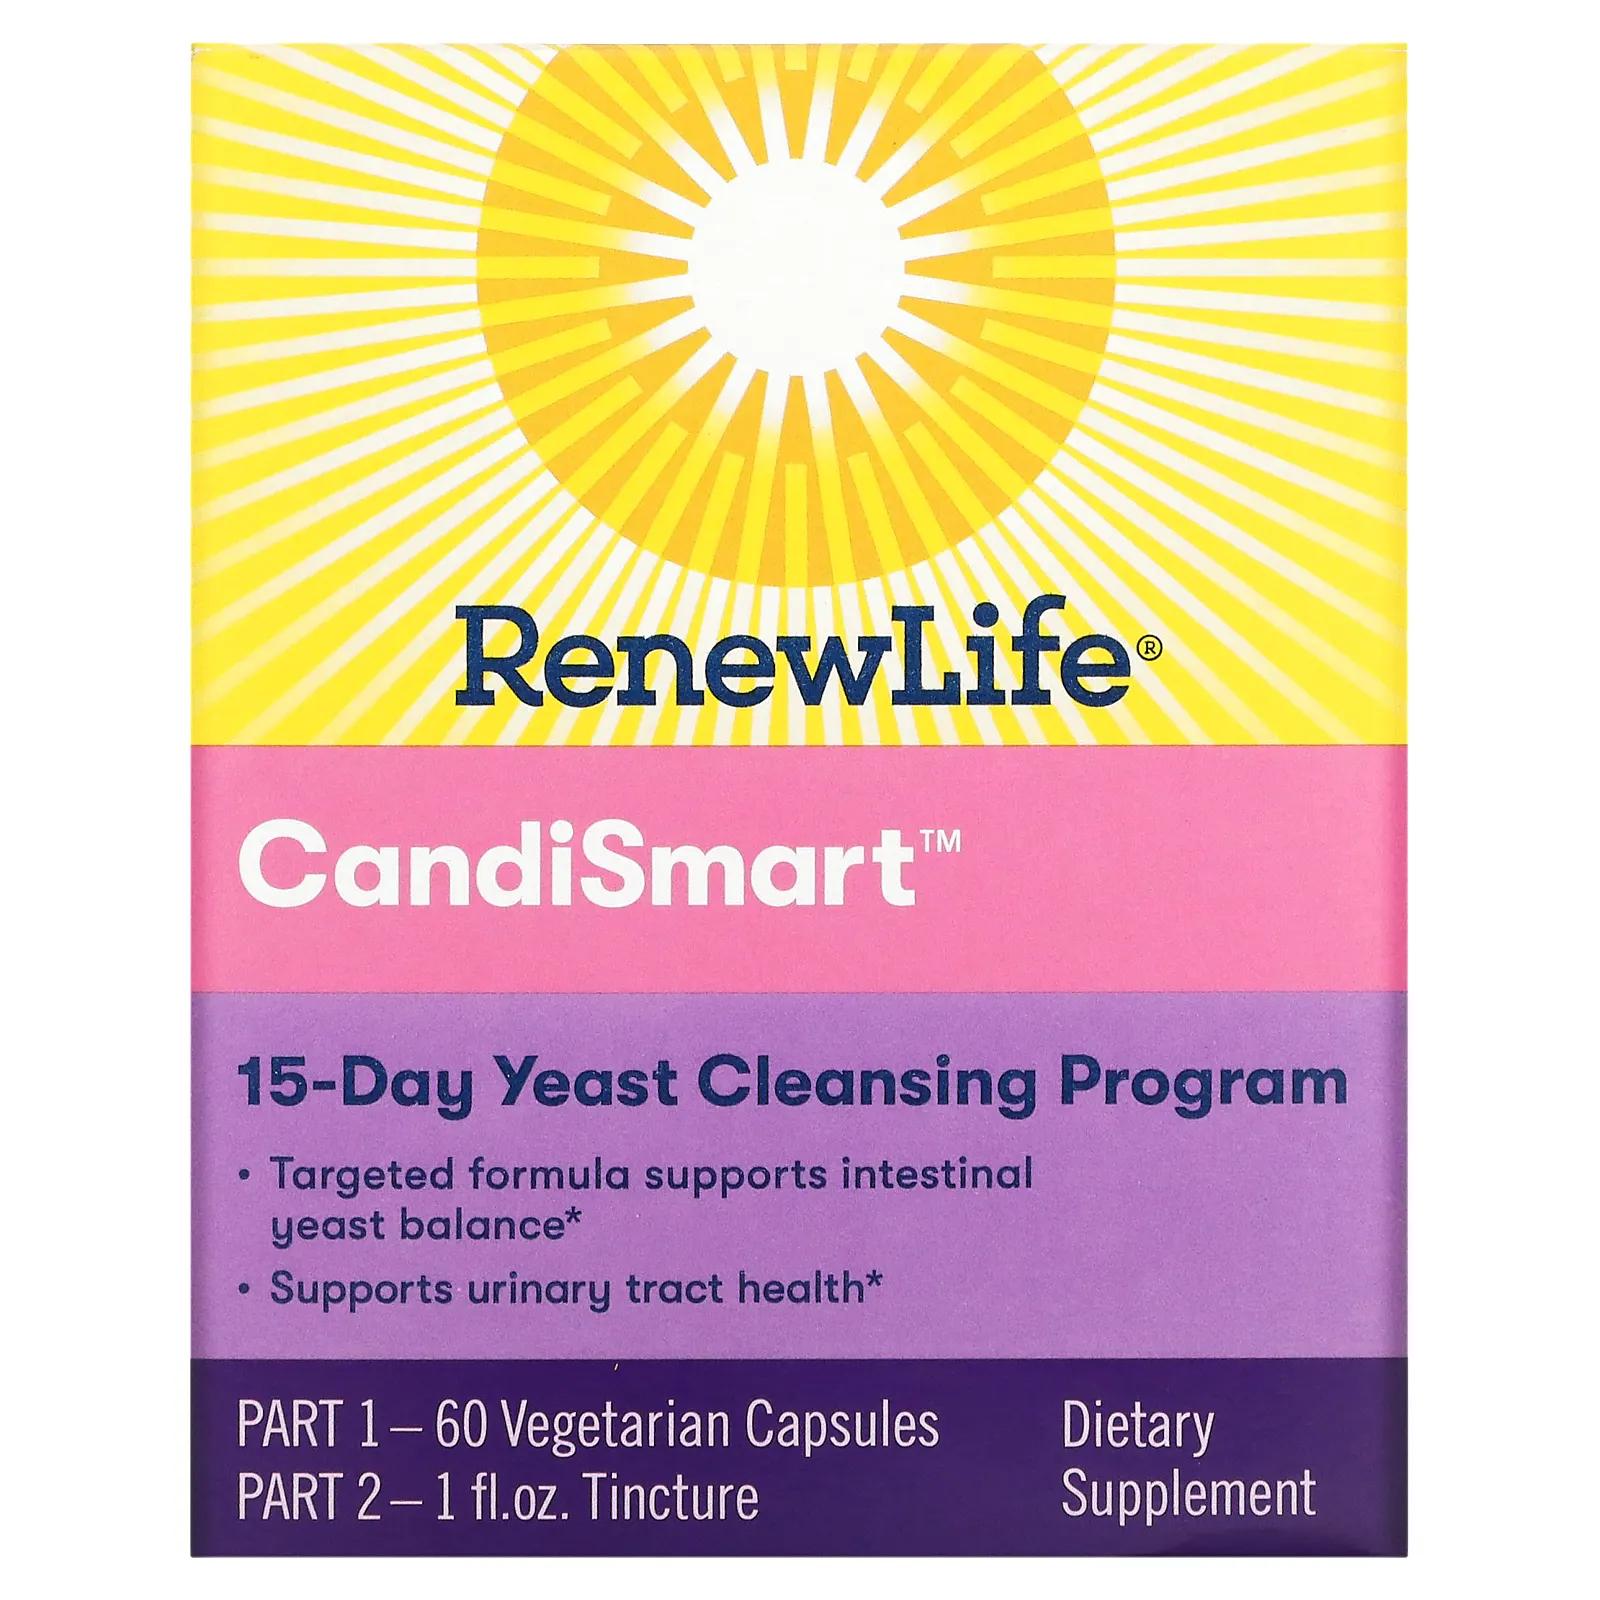 Renew Life Целевая Candi Smart очищающая дрожжевая формула 15-дневная программа 2-компонентная программа renew life направленное действие parasmart микробиологическое очищение 15 дневная программа из 2 частей